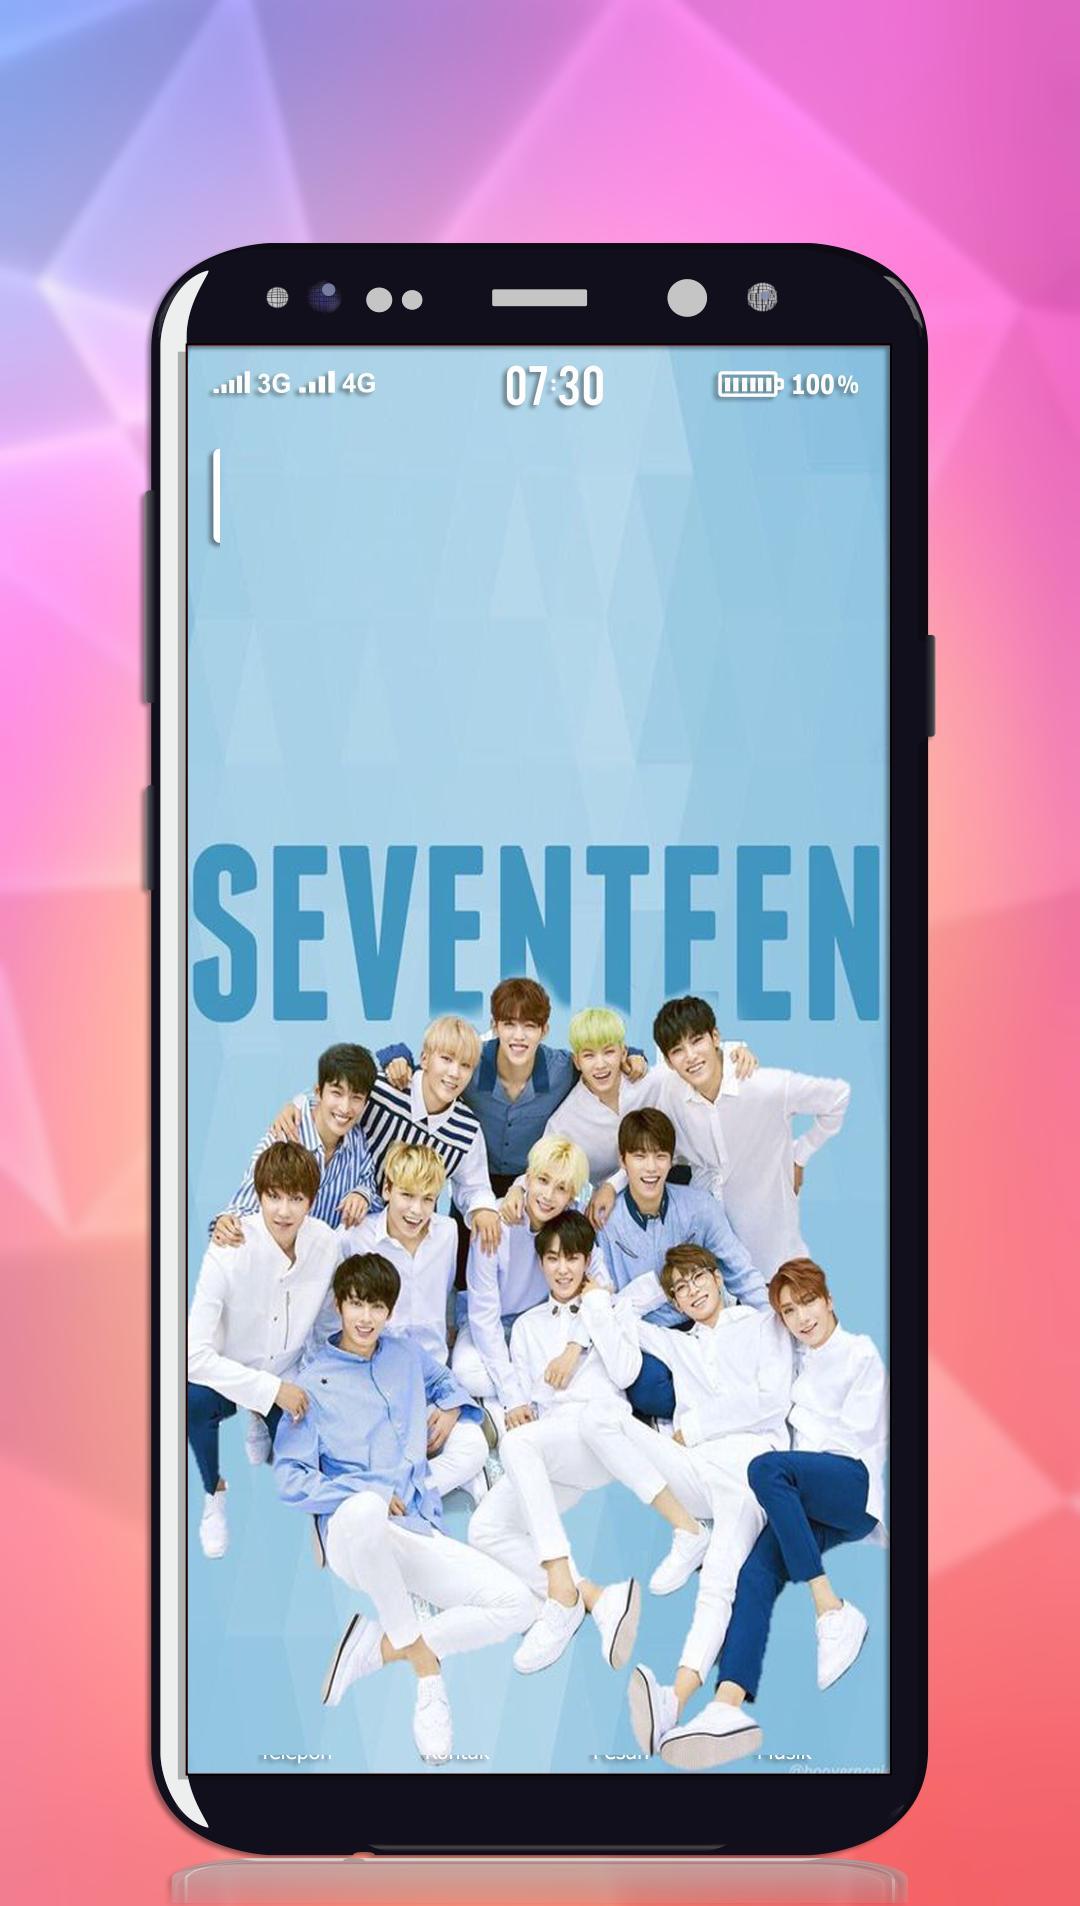 Seventeen Kpop Wallpapers - Top Free Seventeen Kpop Backgrounds ...